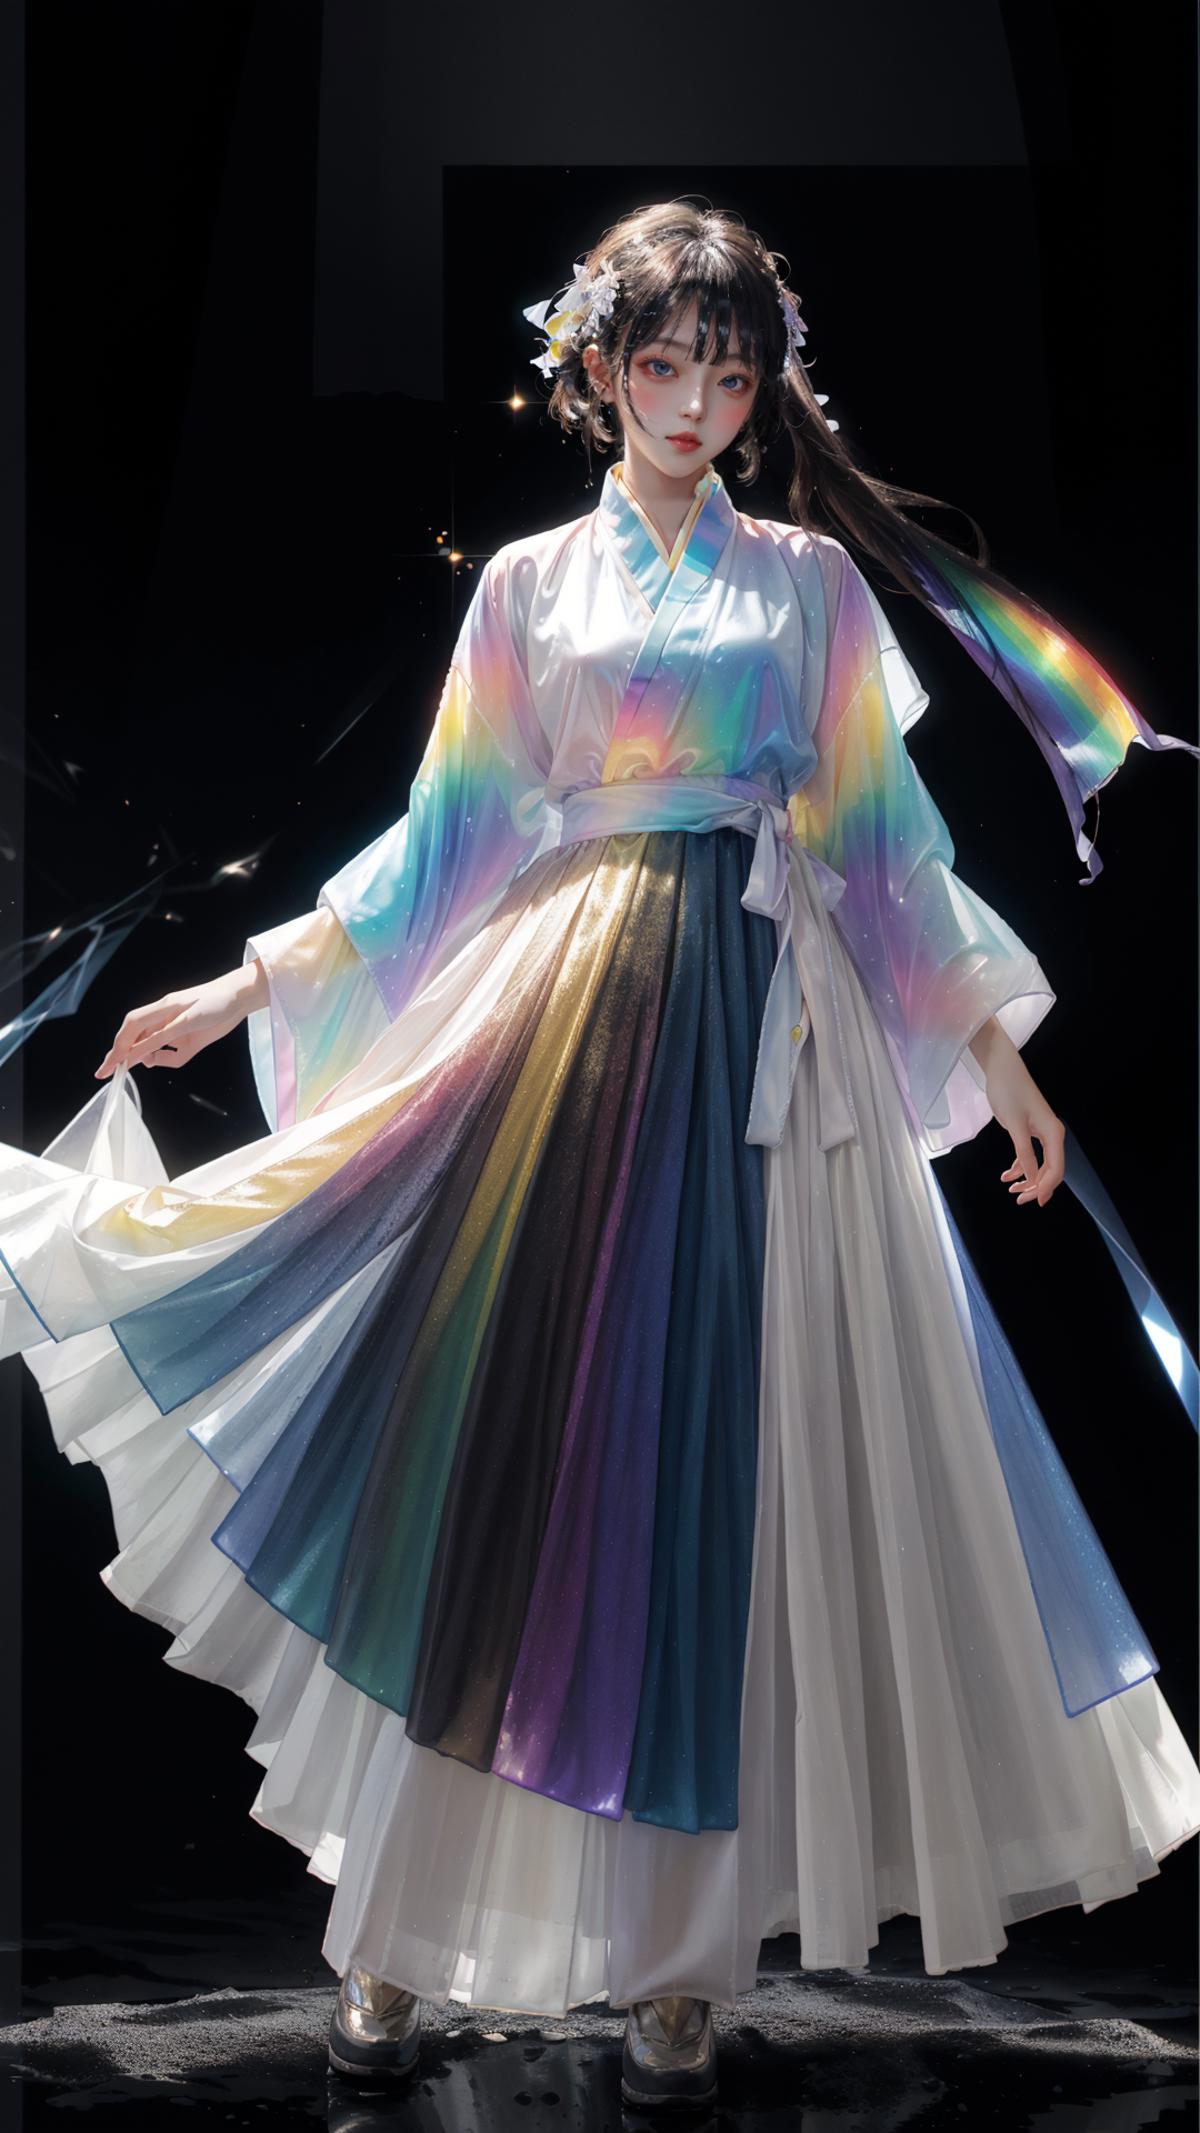 幻光琉璃 Phantasmal Luminous: The Radiance of Rainbow Dispersion image by XiuAI